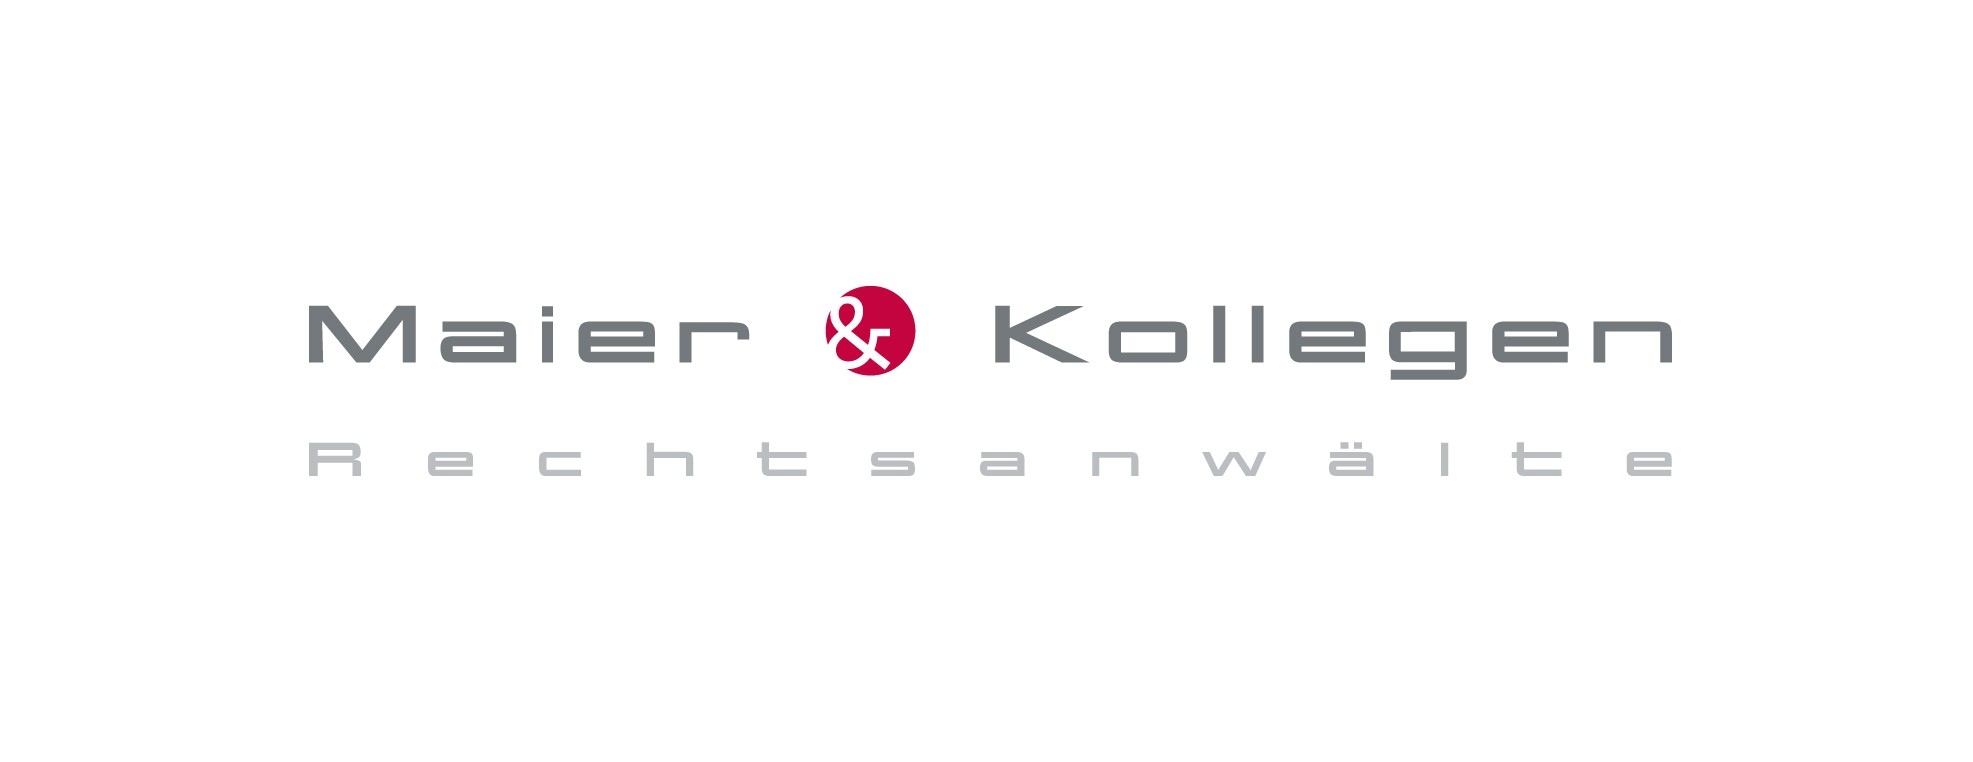 corporate | MAIER & KOLLEGEN | Corporate Design